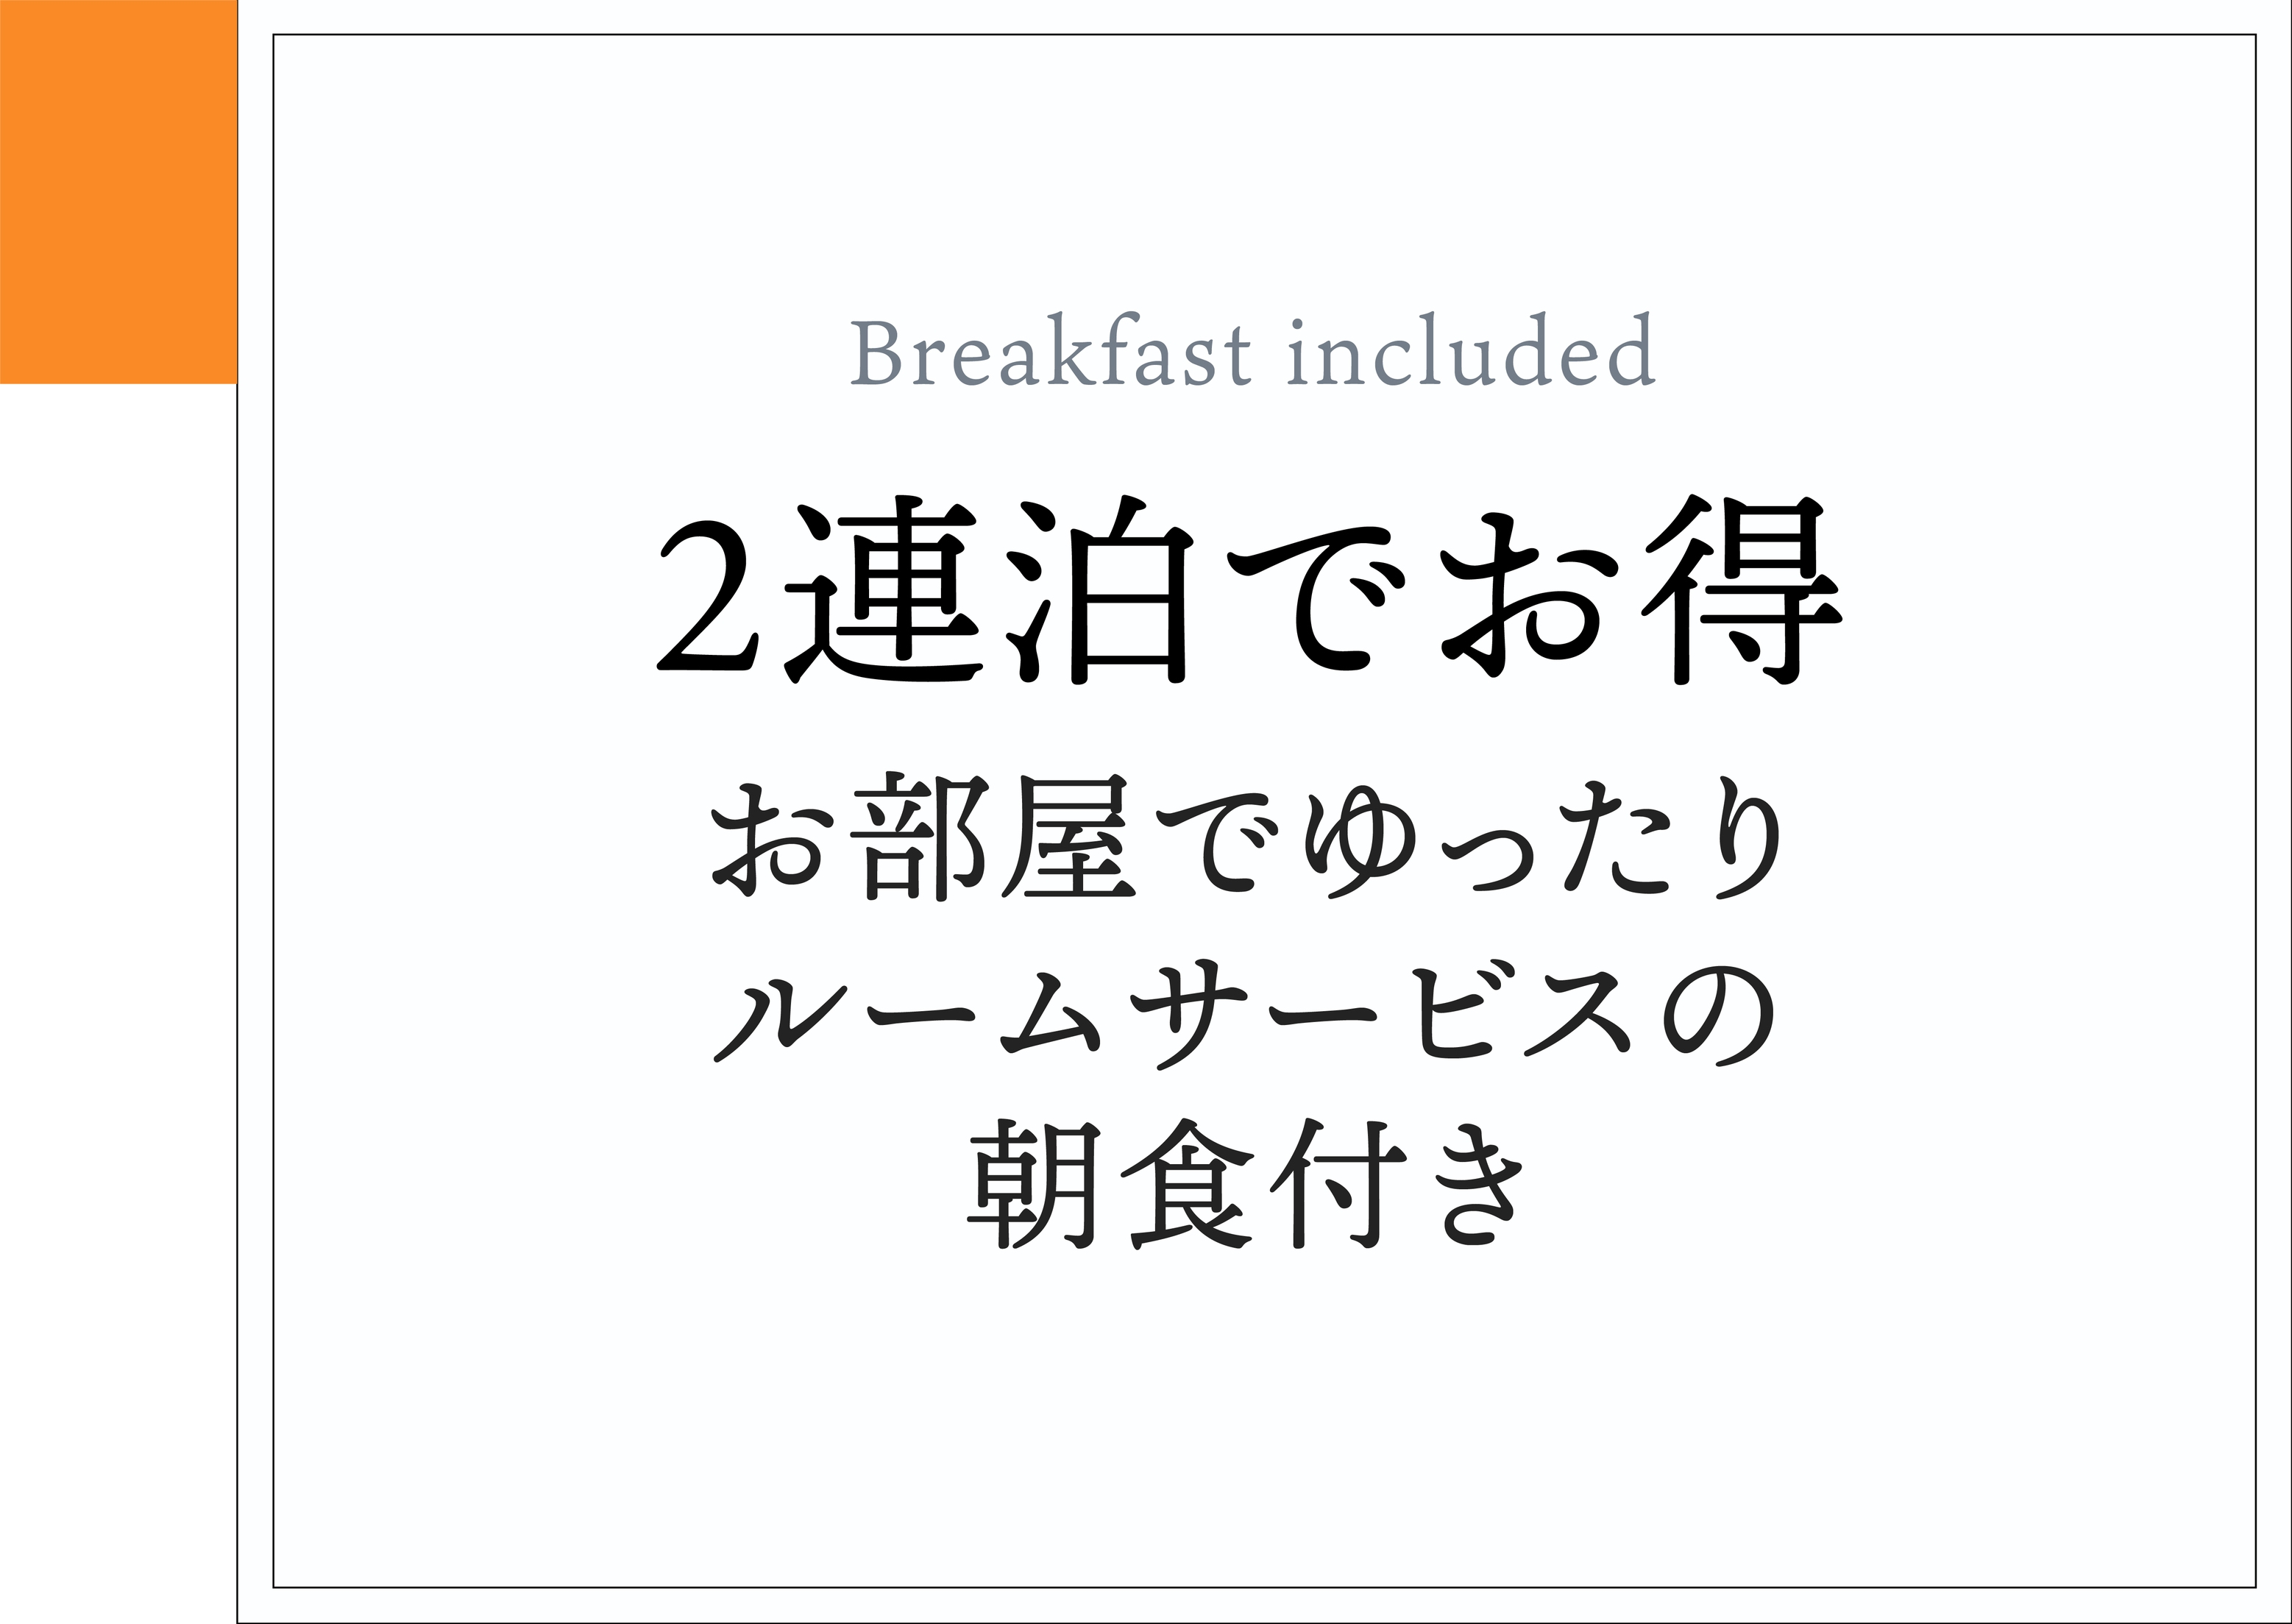 【2連泊優待】お部屋でゆったりルームサービスの朝食付きプラン